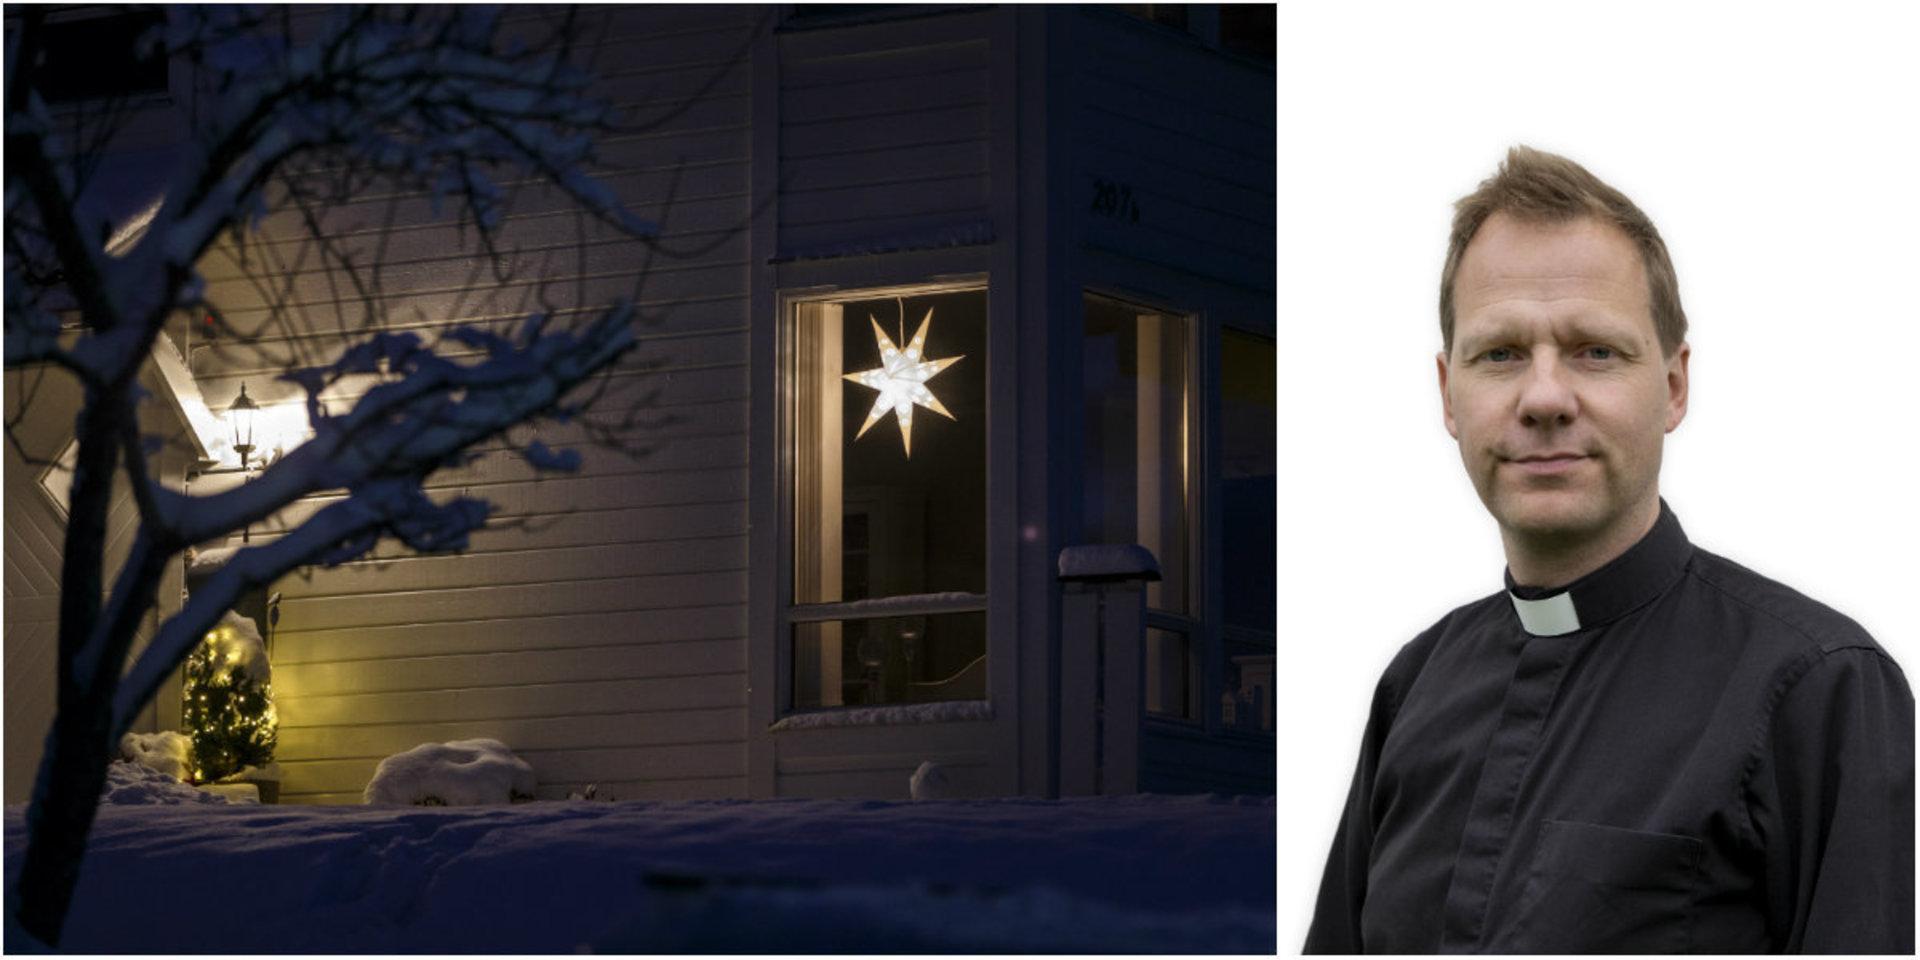 En av Jonas Eeks grannar har adventsstjärnan kvar i fönstret. &quot;Den sprider fortfarande sitt hemtrevliga ljus&quot;, konstaterar Jonas i sin helgkrönika.